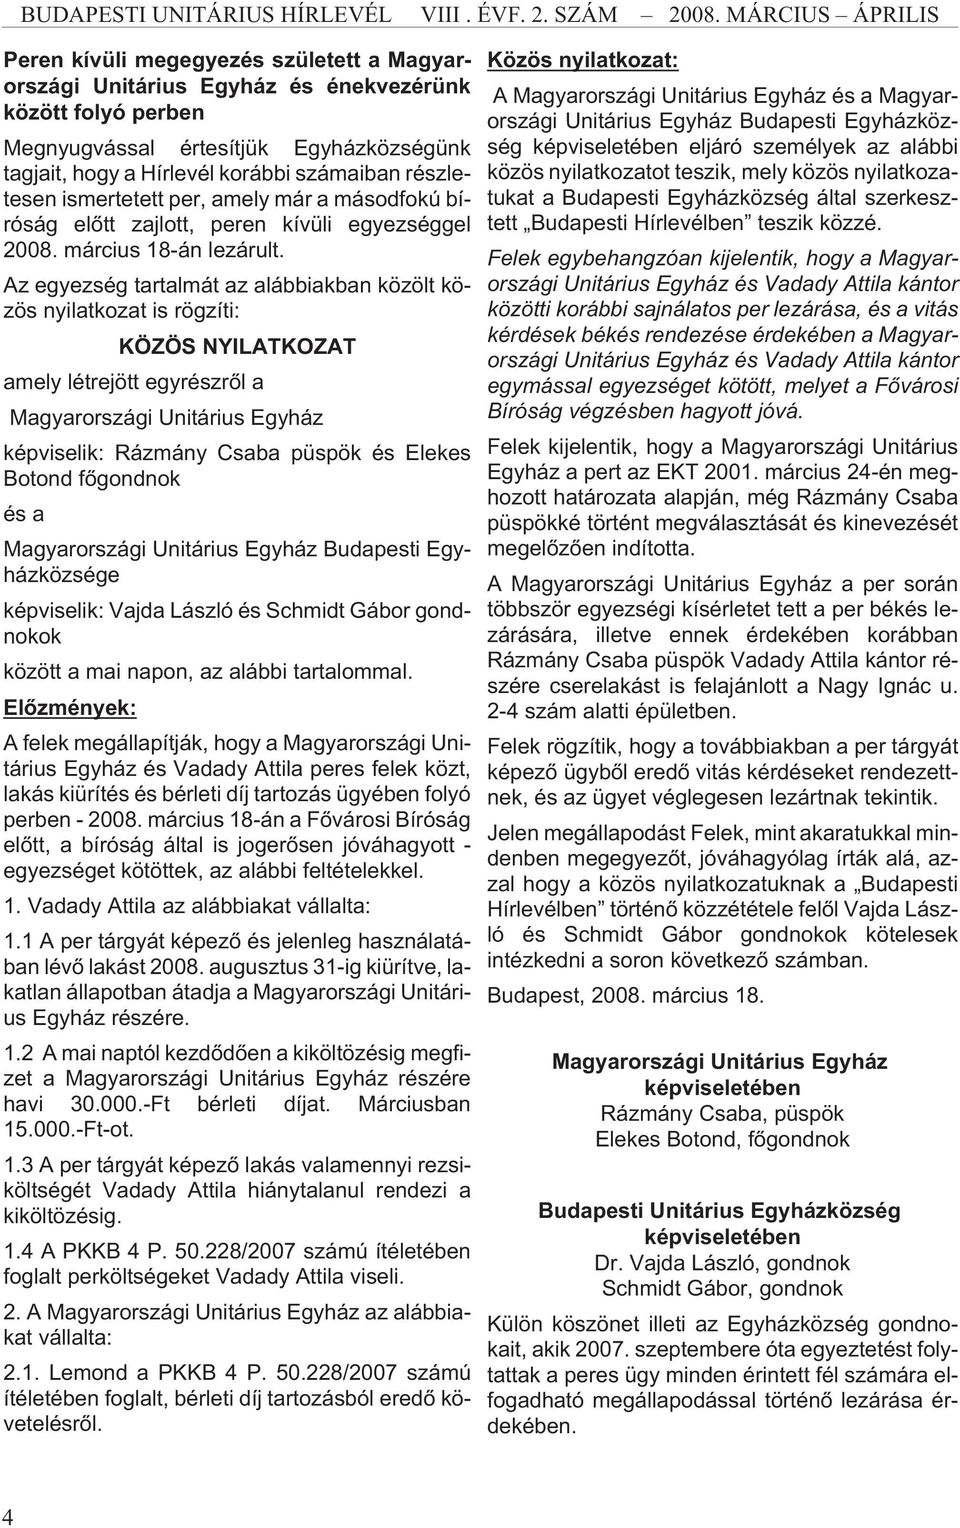 Az egyezség tartalmát az alábbiakban közölt közös nyilatkozat is rögzíti: KÖZÖS NYILATKOZAT amely létrejött egyrészrõl a Magyarországi Unitárius Egyház képviselik: Rázmány Csaba püspök és Elekes